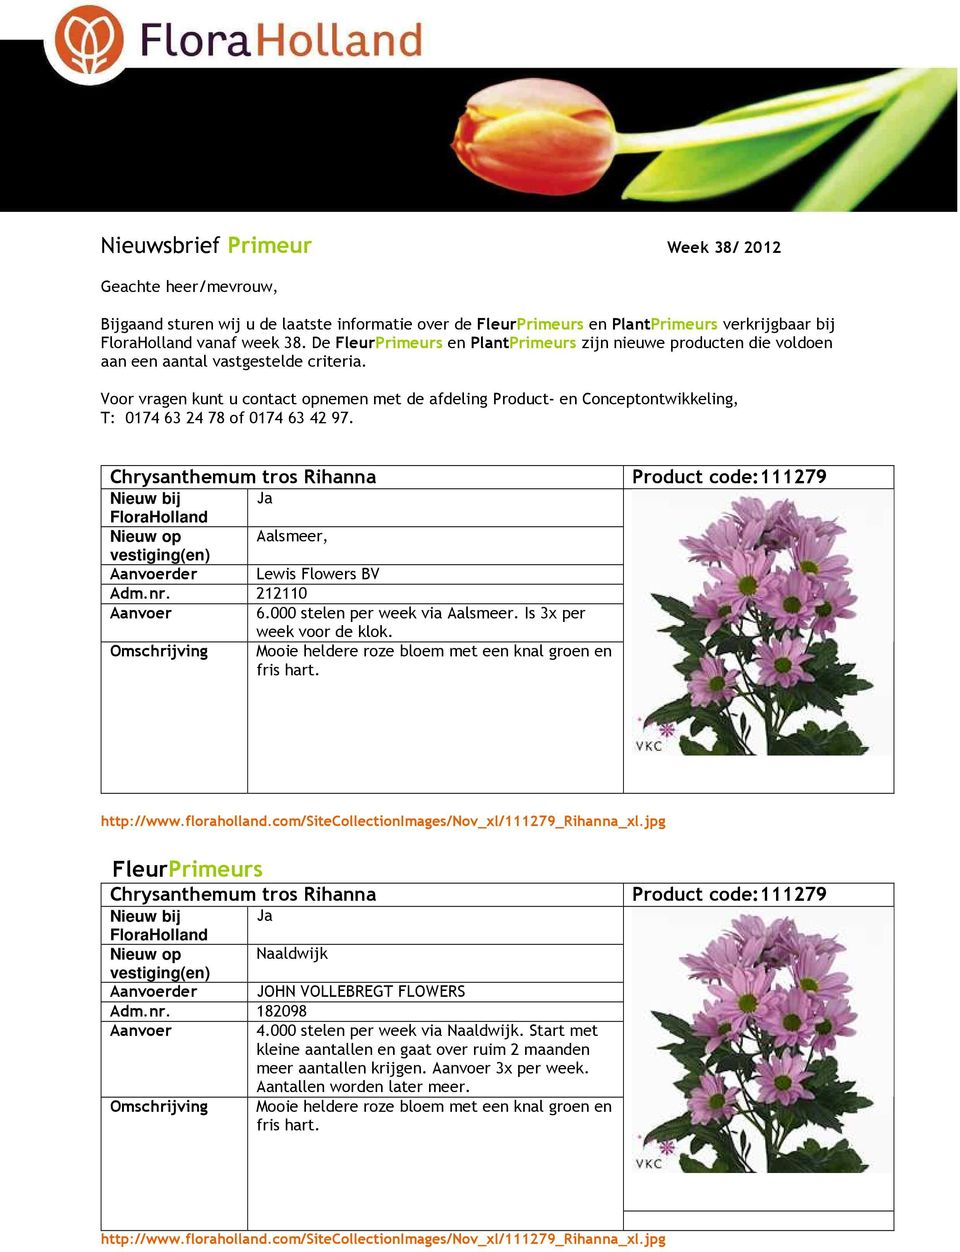 Voor vragen kunt u contact opnemen met de afdeling Product- en Conceptontwikkeling, T: 0174 63 24 78 of 0174 63 42 97. Chrysanthemum tros Rihanna Nieuw op Aalsmeer, Aanvoerder Lewis Flowers BV Adm.nr.